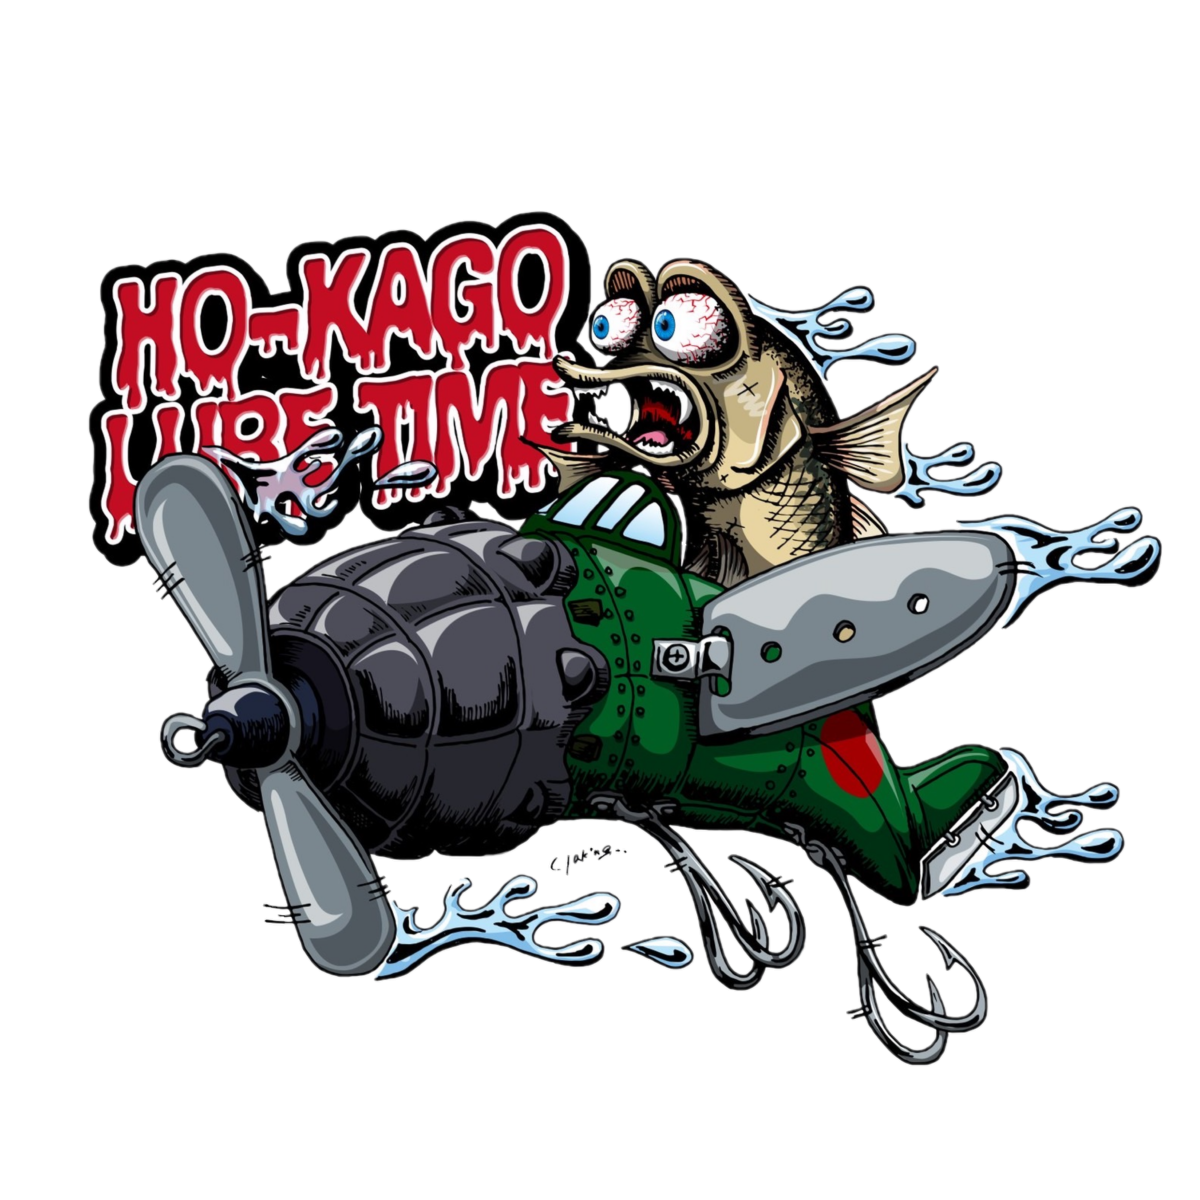 HO-KAGO LURE TIME